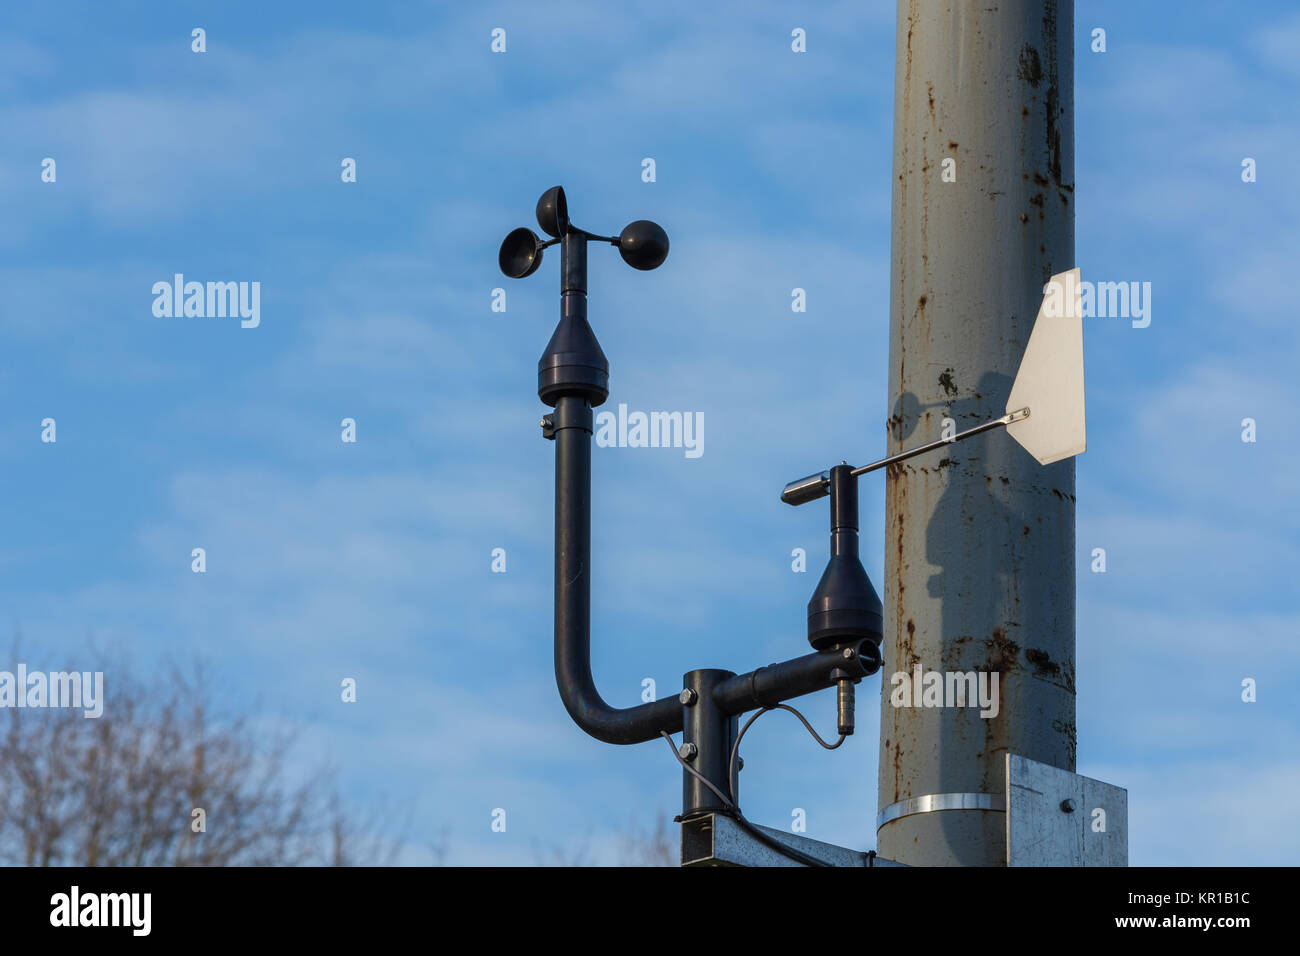 Wetterstation mit Anemometer auf blauem Himmel. Stock Photo